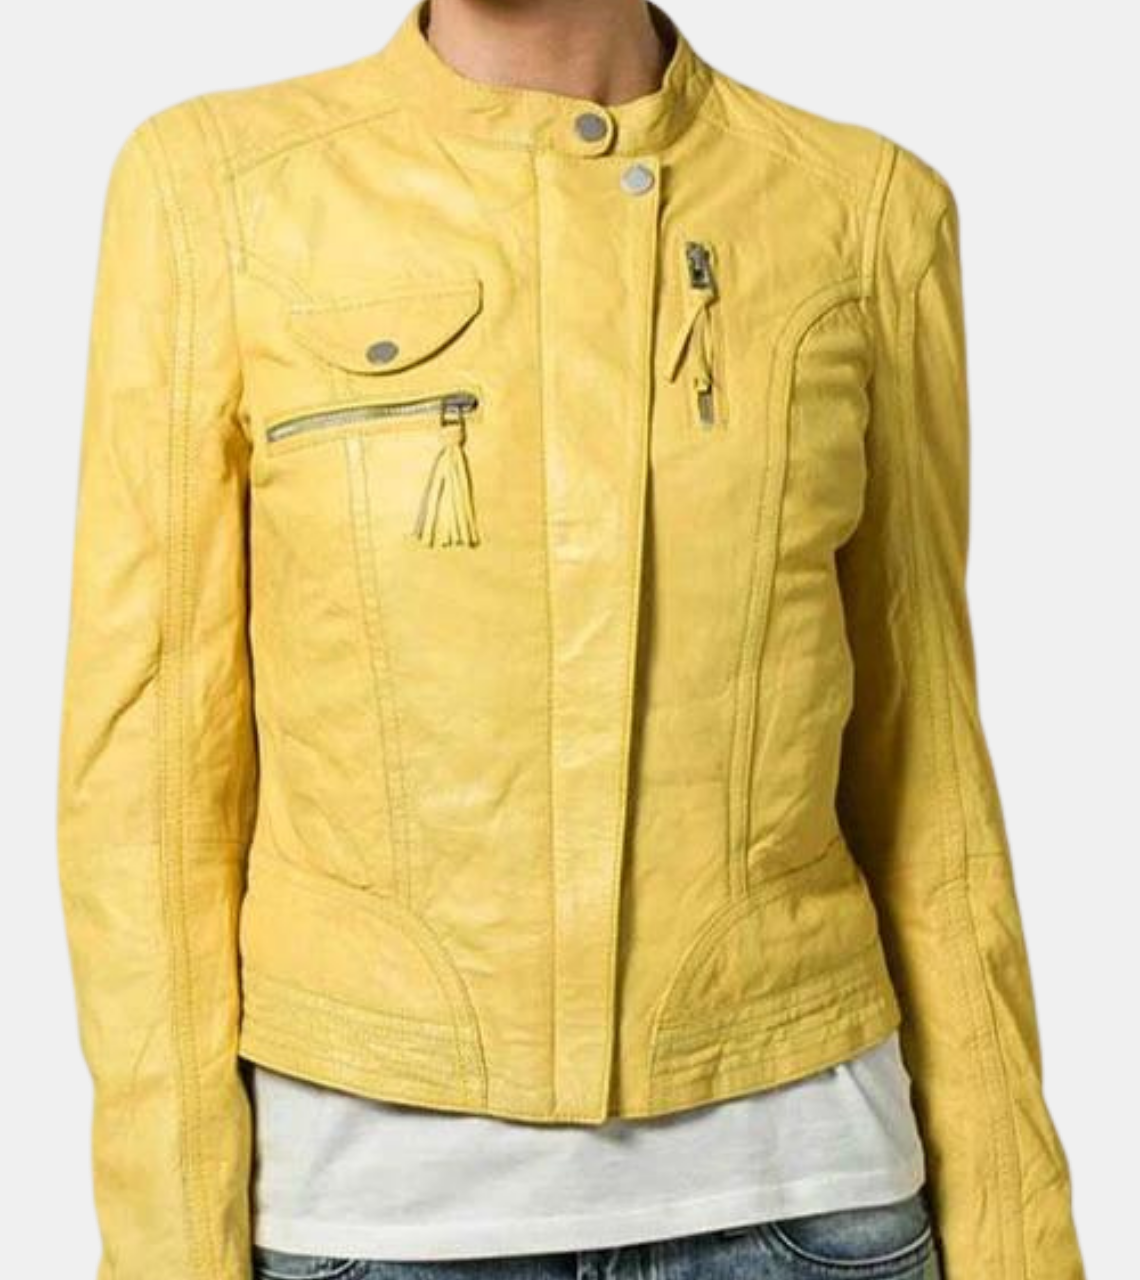 Bonavich Women's Yellow Biker's Leather Jacket